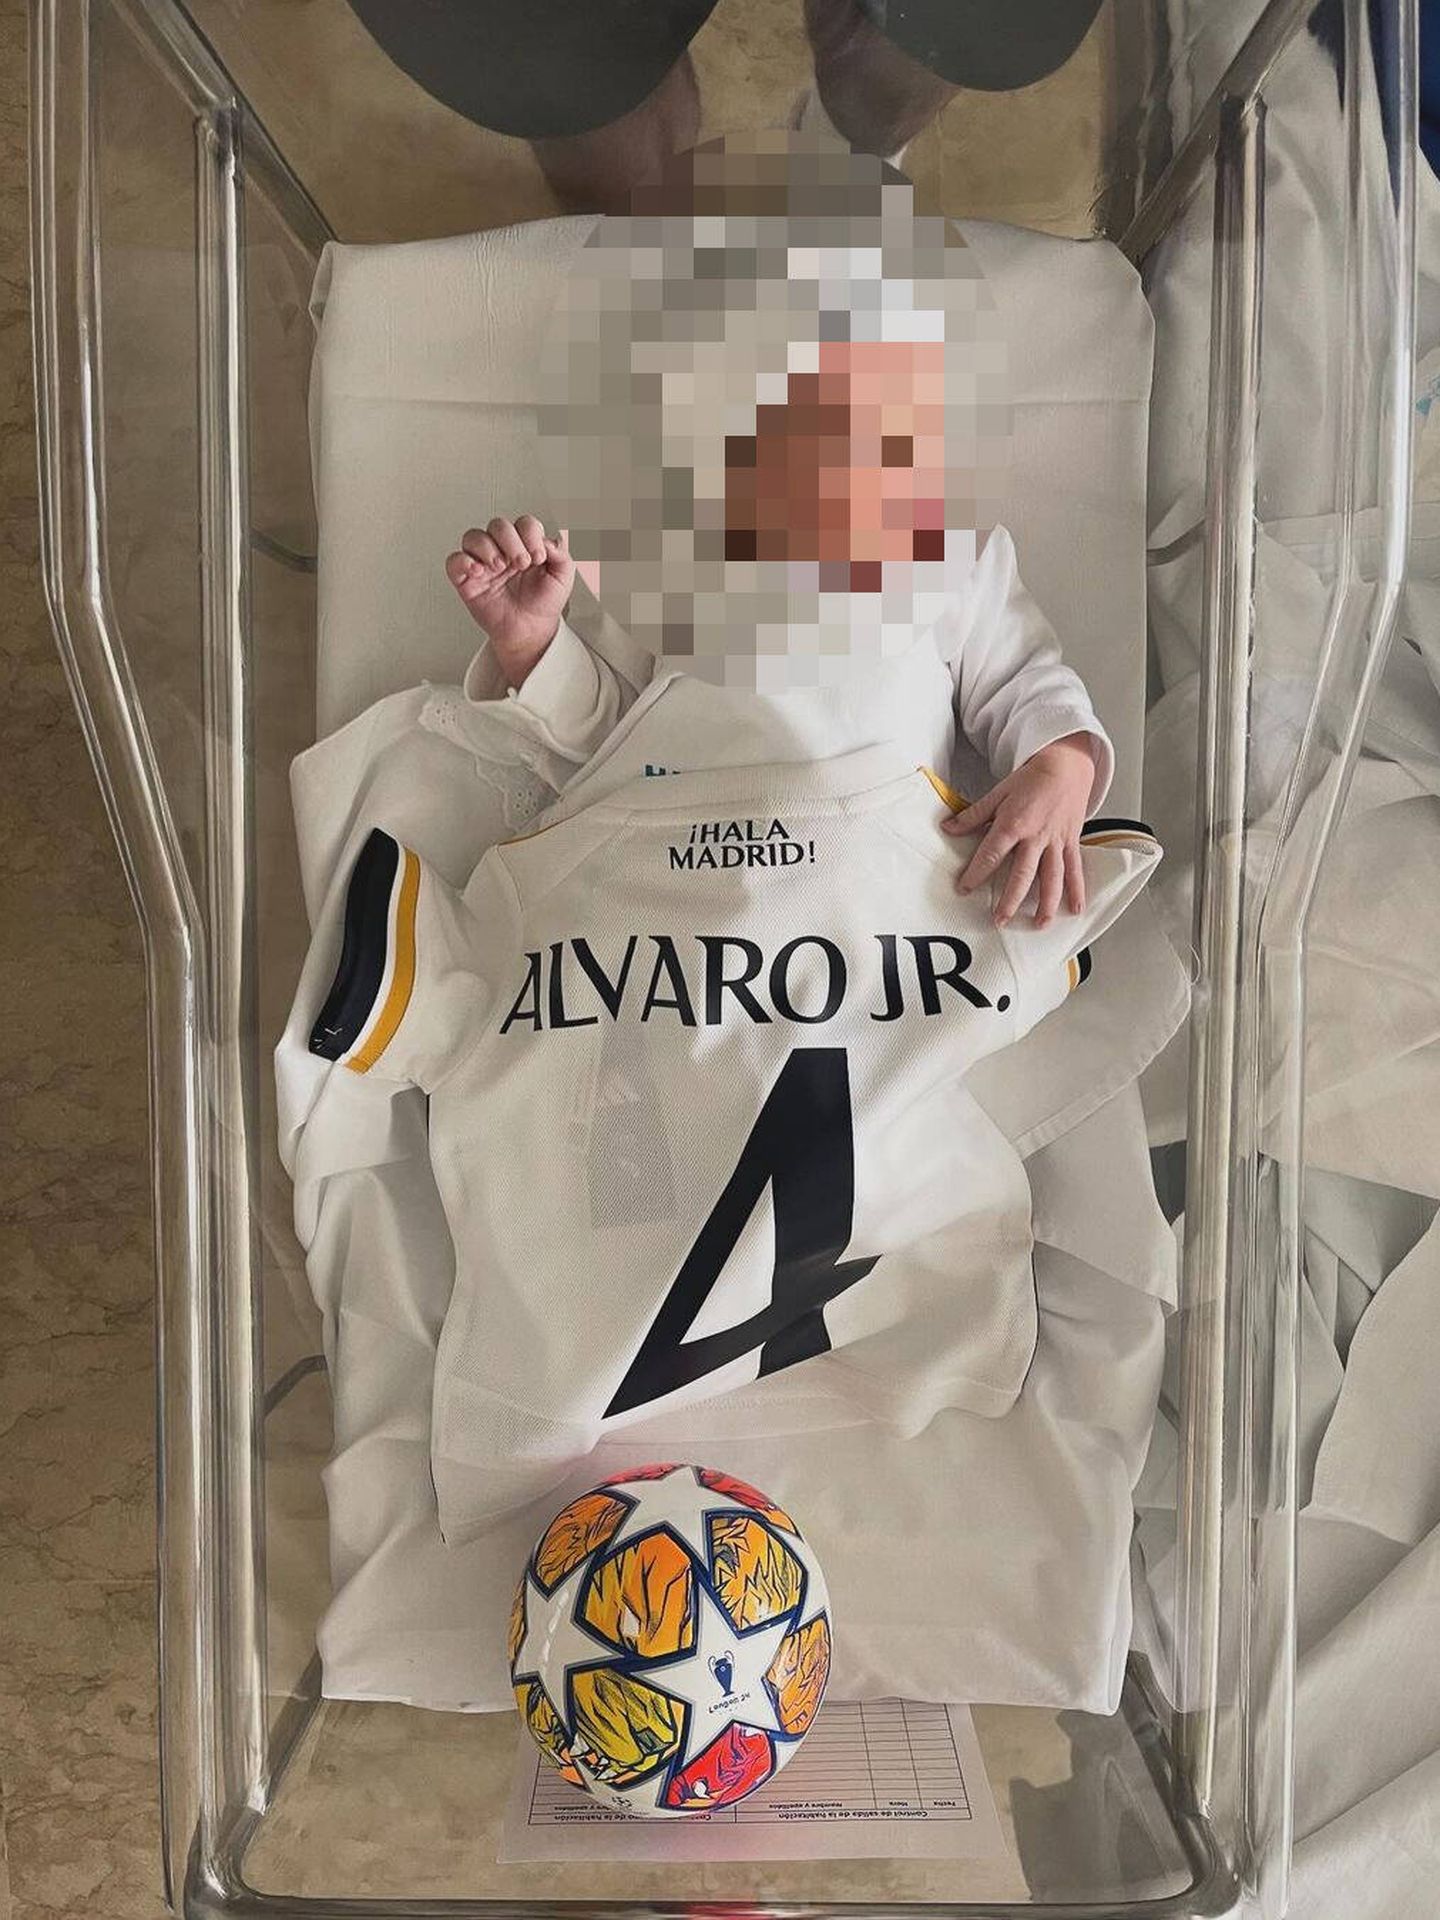 Fotografía subida por Álvaro Ruiz para presentar a su hijo, Álvaro Jr.(Instagram/@alvroruiz)